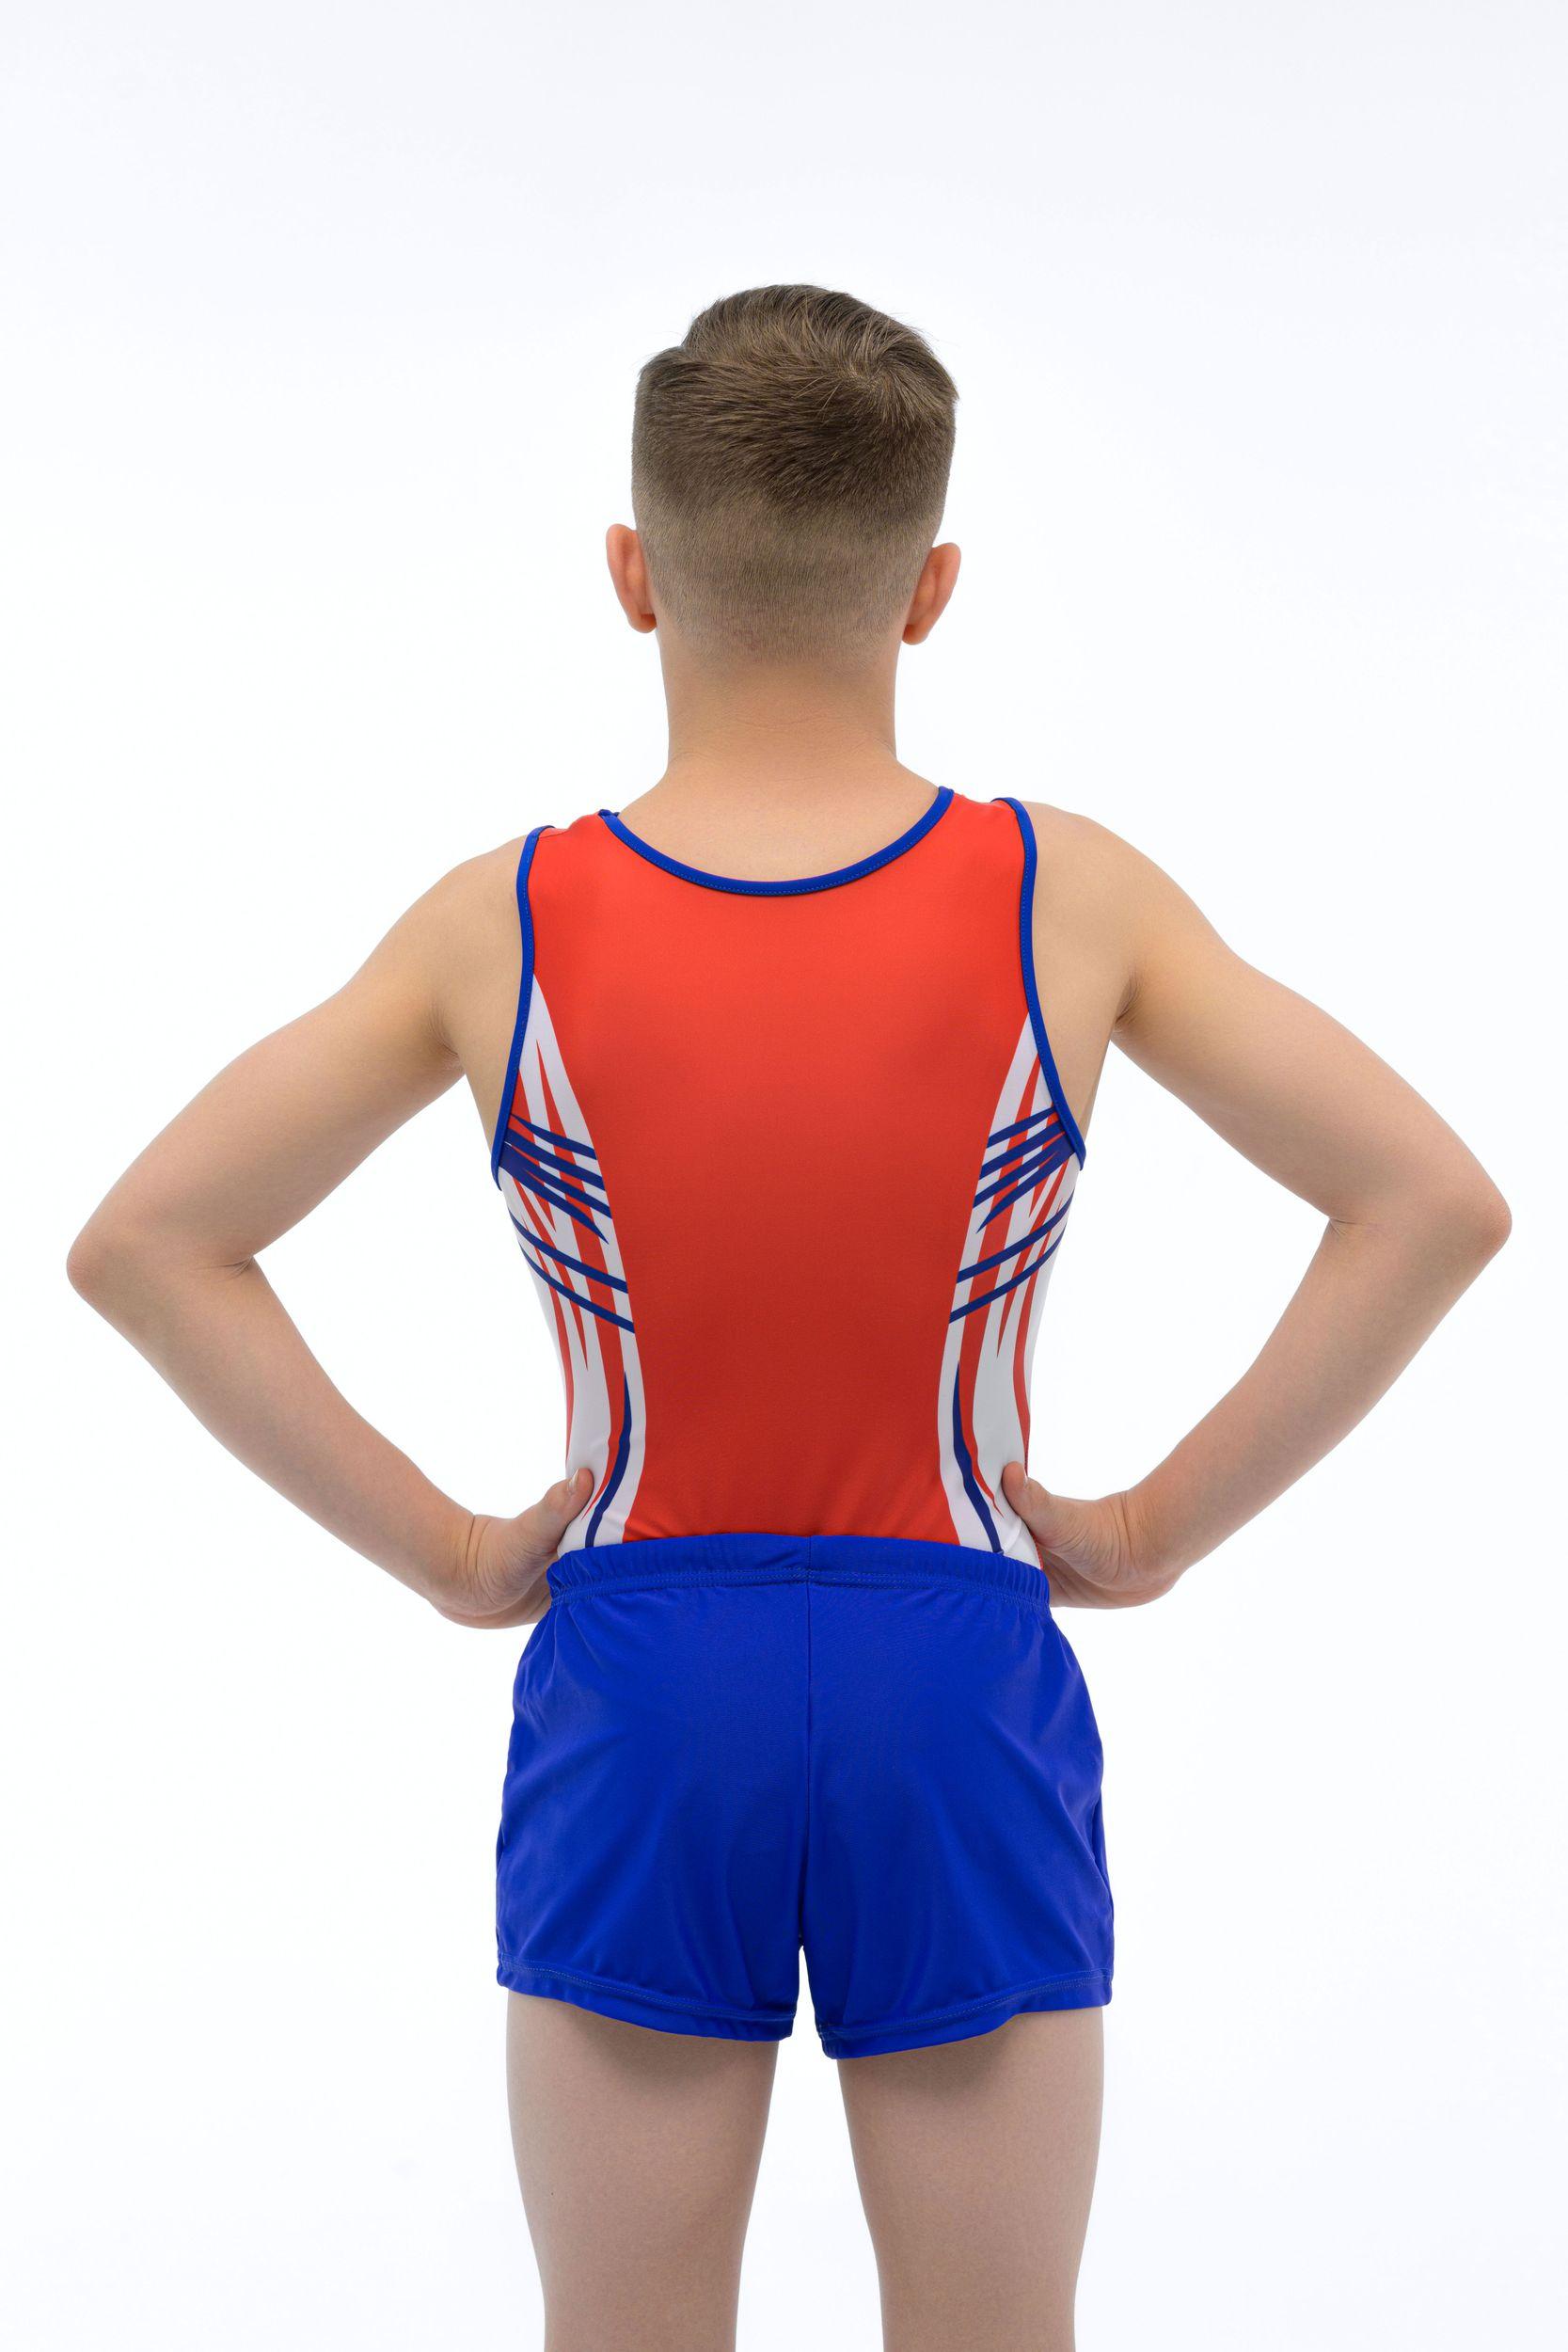 Купальник мужской для спортивной гимнастики GK Sport 202-23 оранжевый с бело-синим рисунком без рукава